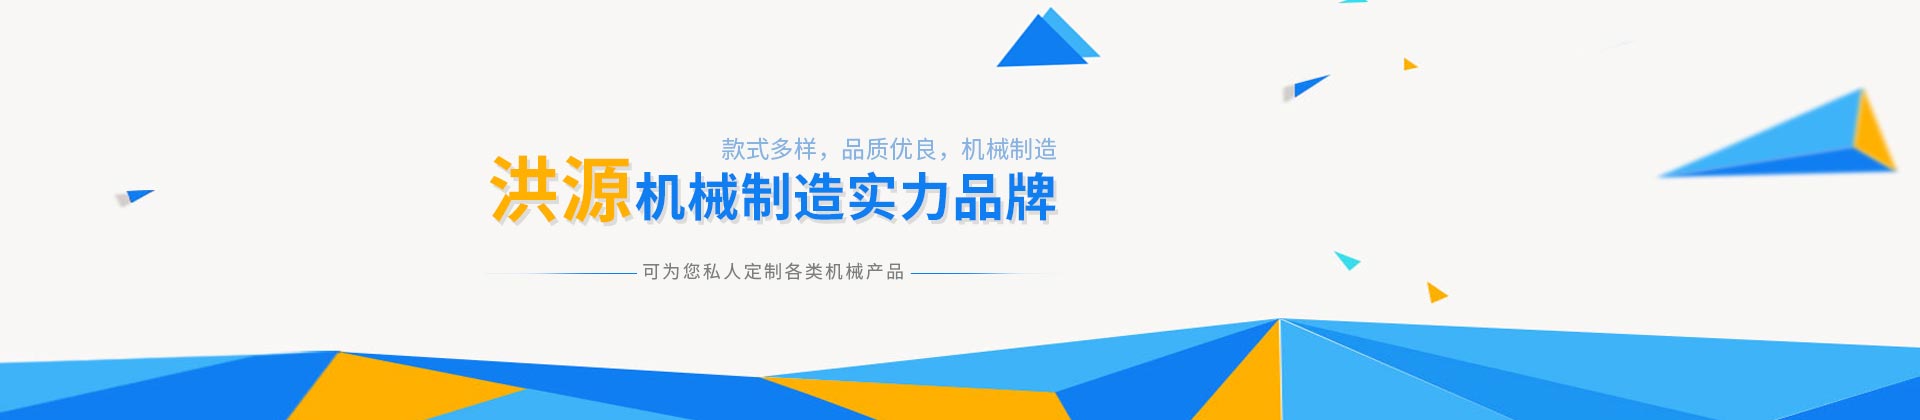 武汉垂直提升安博·体育(中国)股份有限公司官网